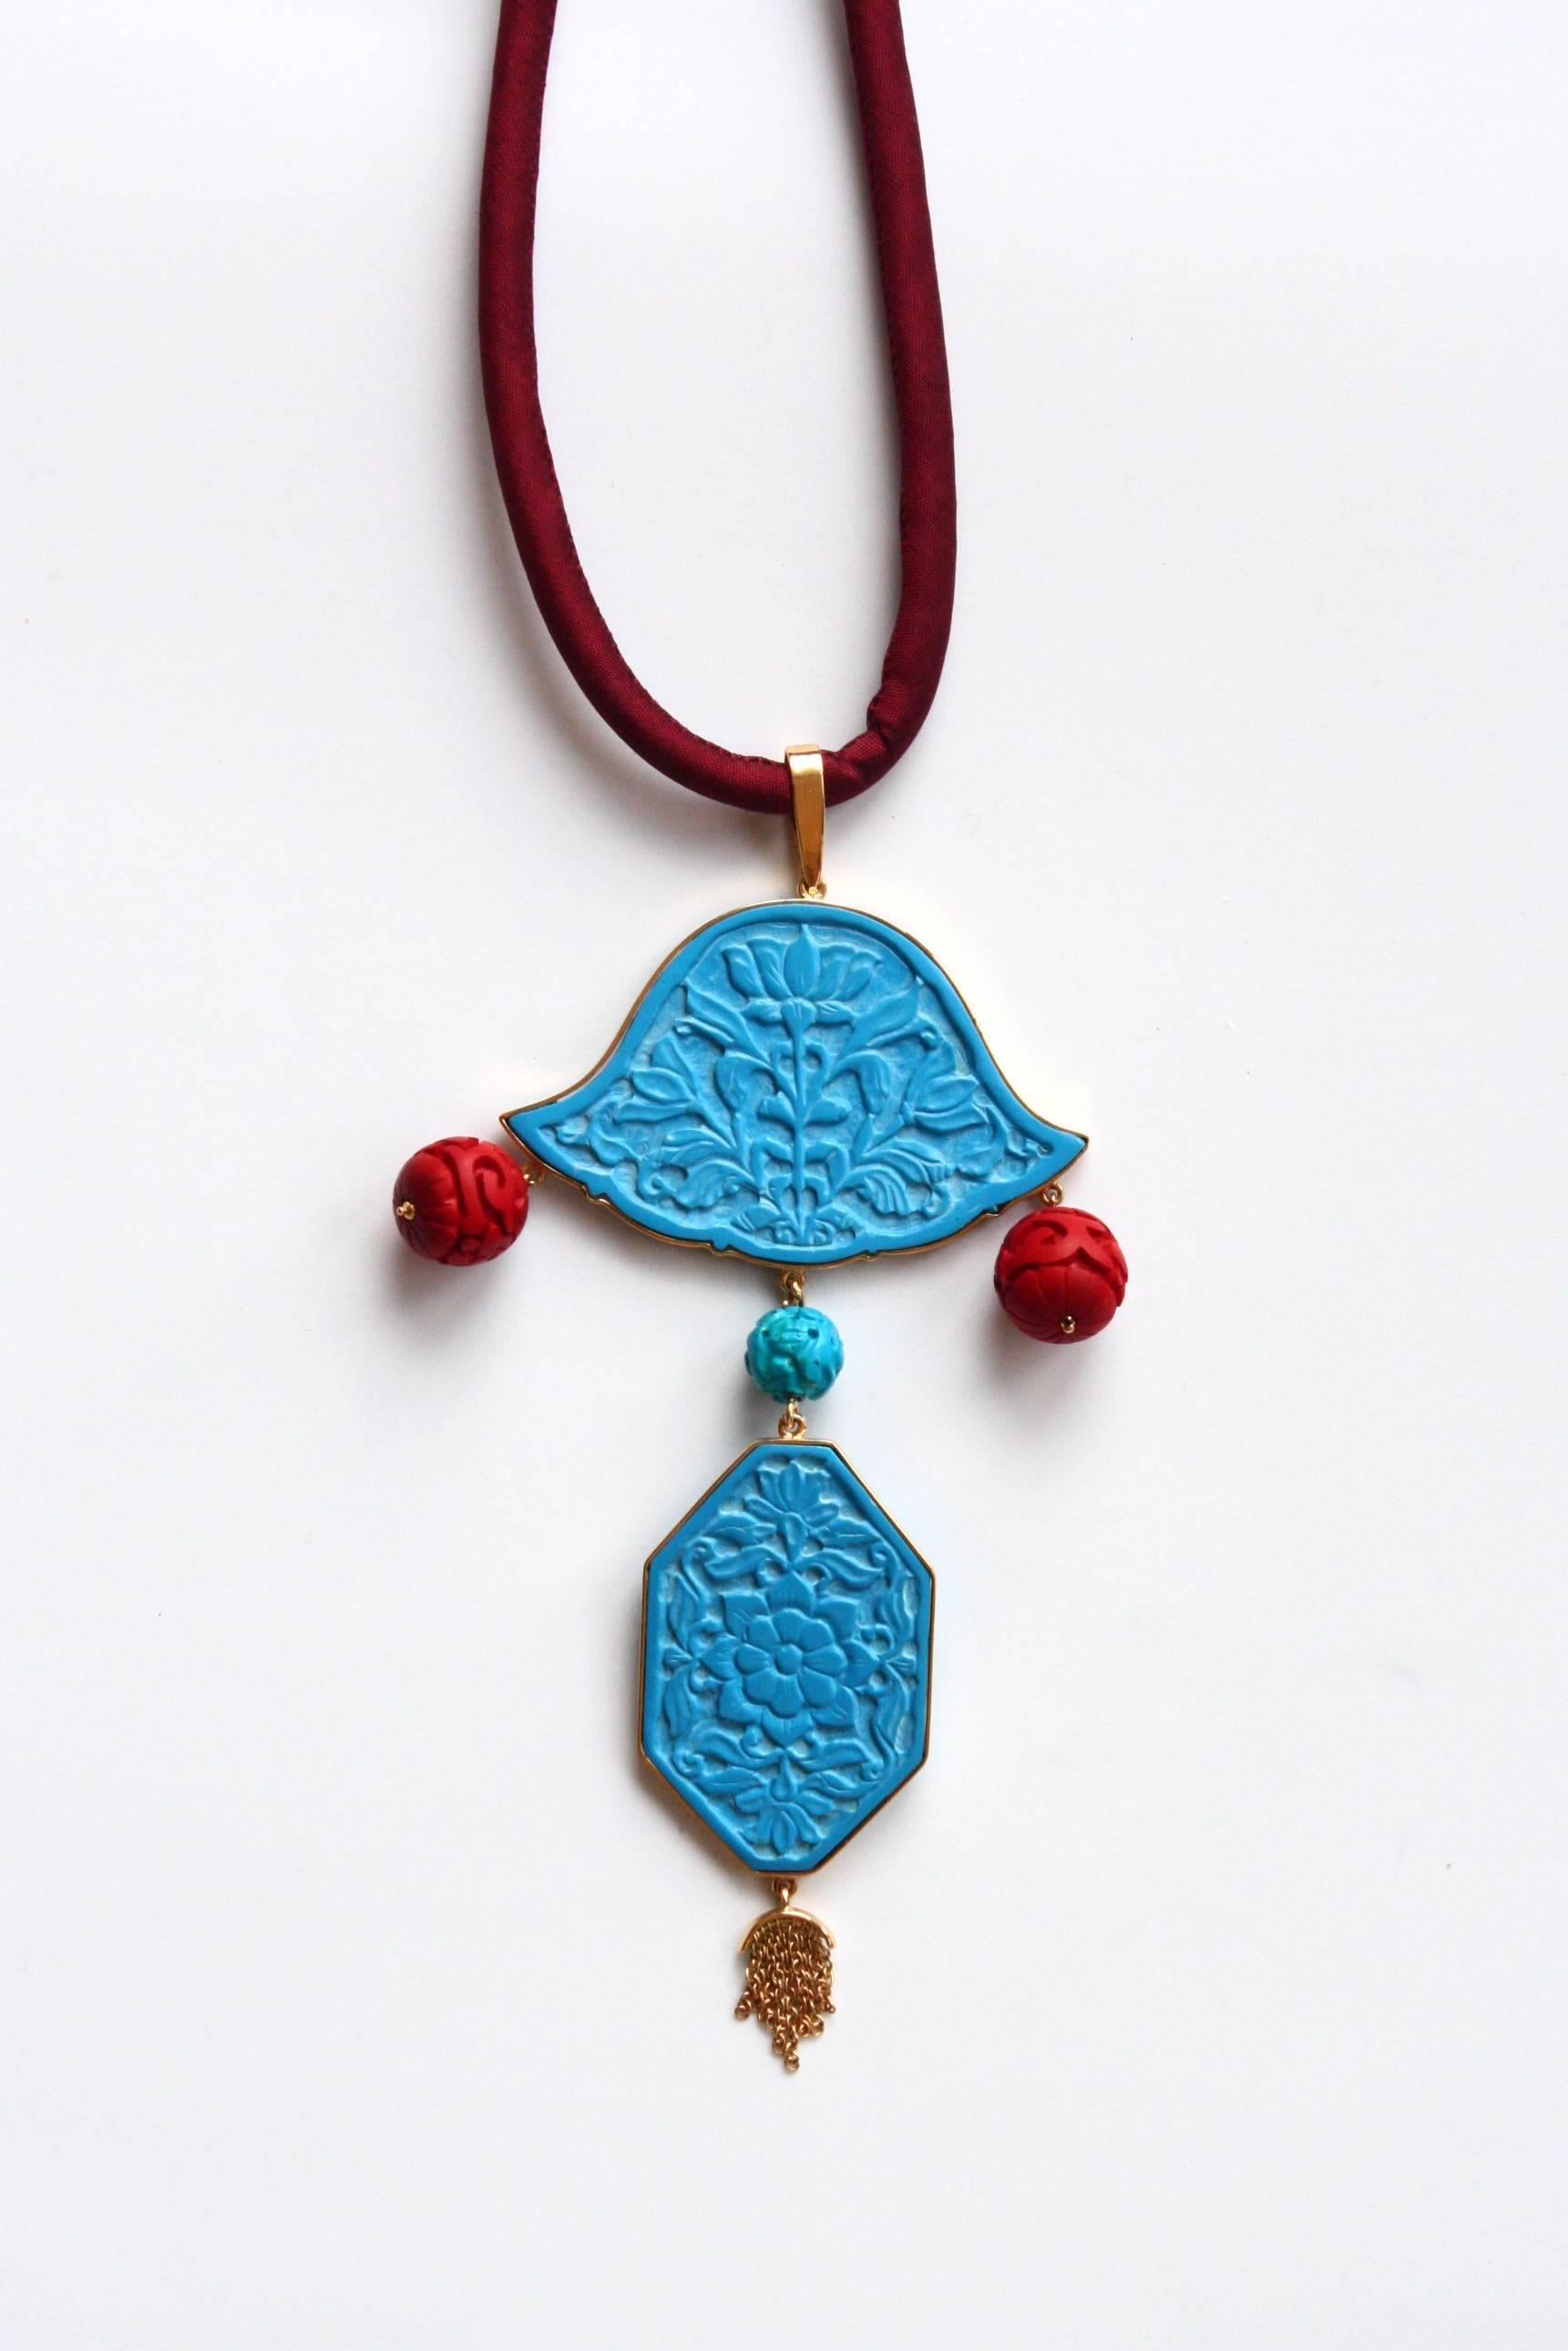 Plaques de turquoises indiennes antiques Or 18,40 gr, laque chinoise. Longueur totale de 15 cm.
Tous les bijoux sont neufs et n'ont jamais été portés ou possédés auparavant. Chaque article arrivera à votre porte joliment emballé dans nos boîtes,